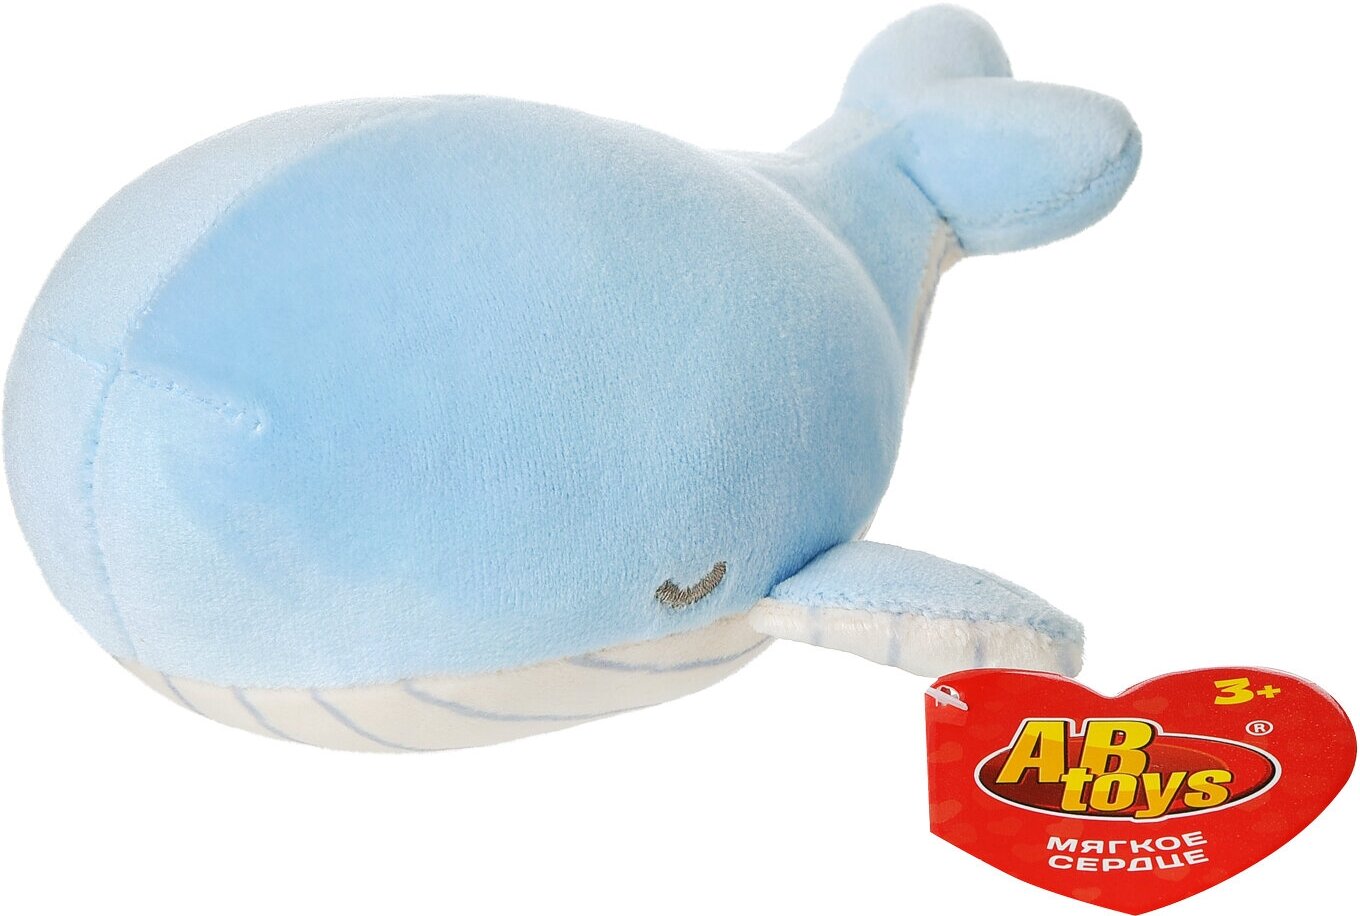 Мягкая игрушка Abtoys Supersoft. Кит синий, 13 см